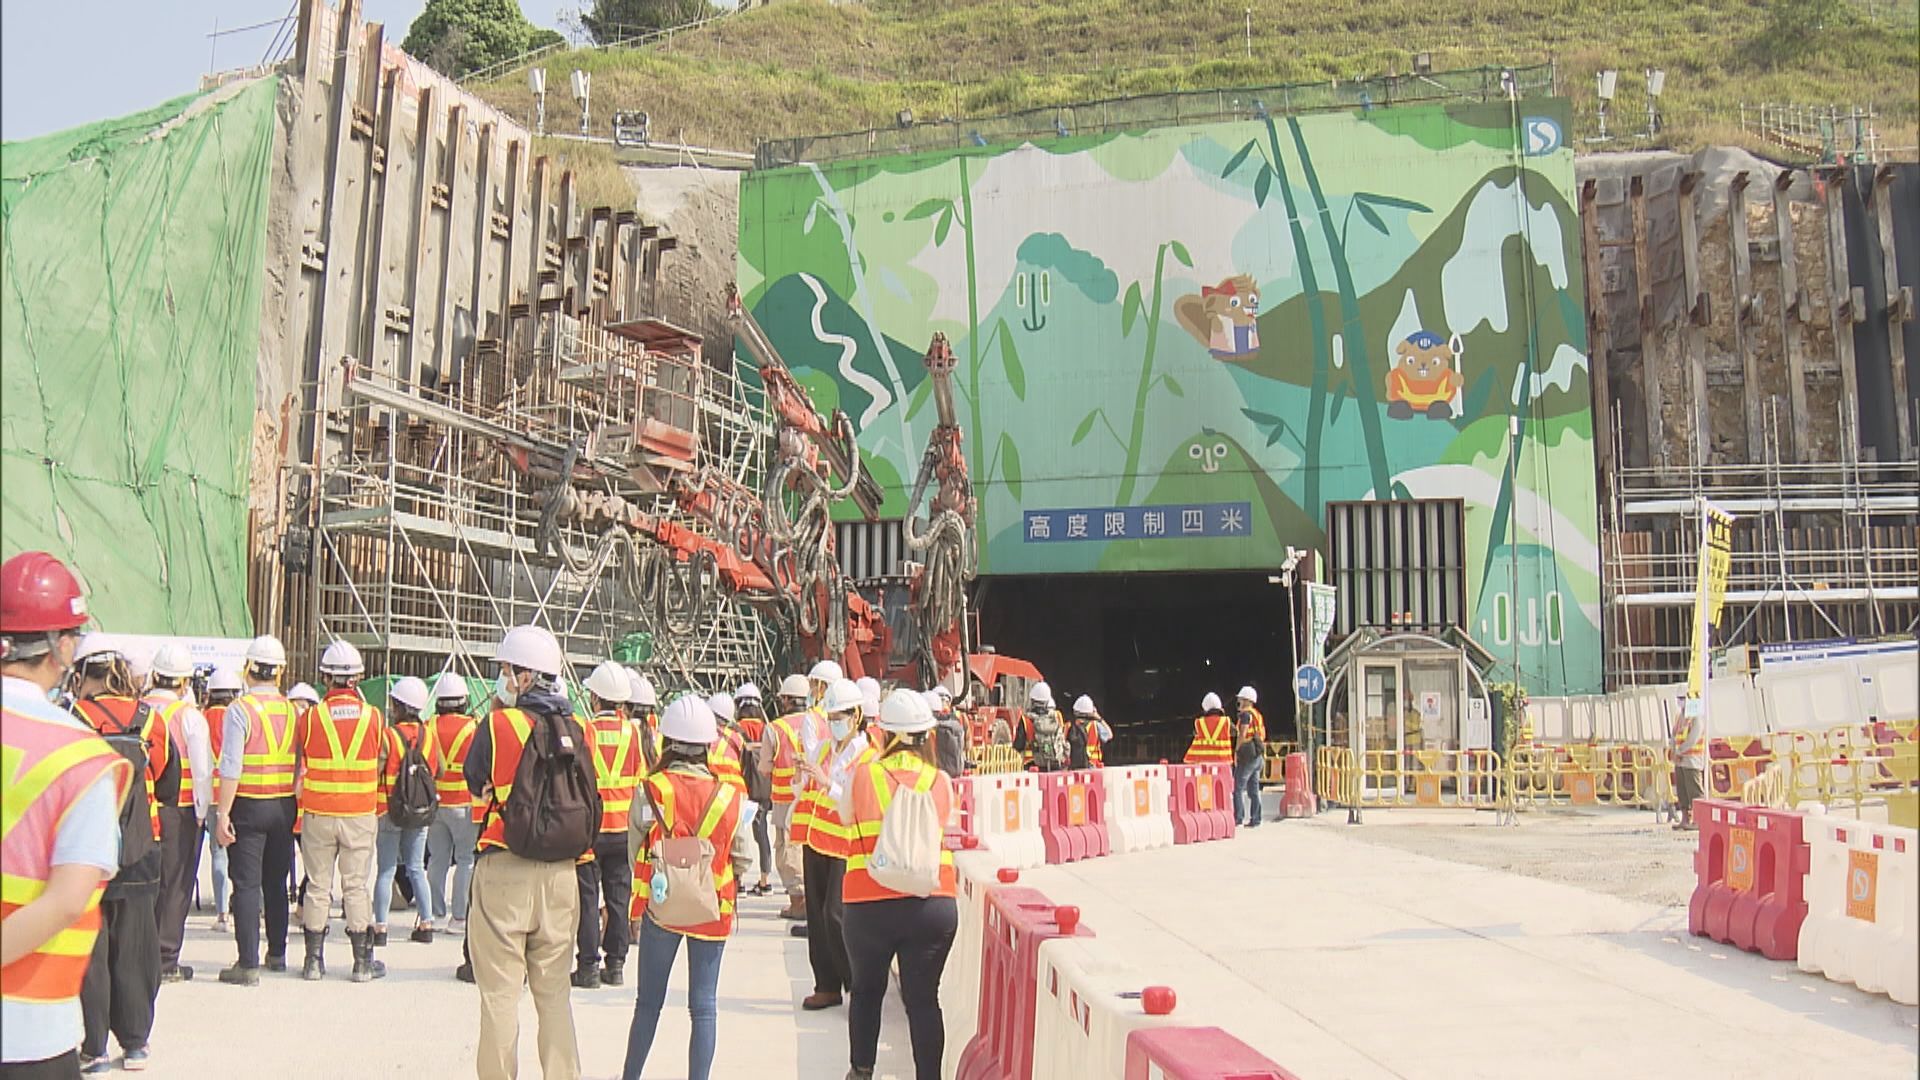 岩洞污水處理廠建造工程料年中展開2029年啟用